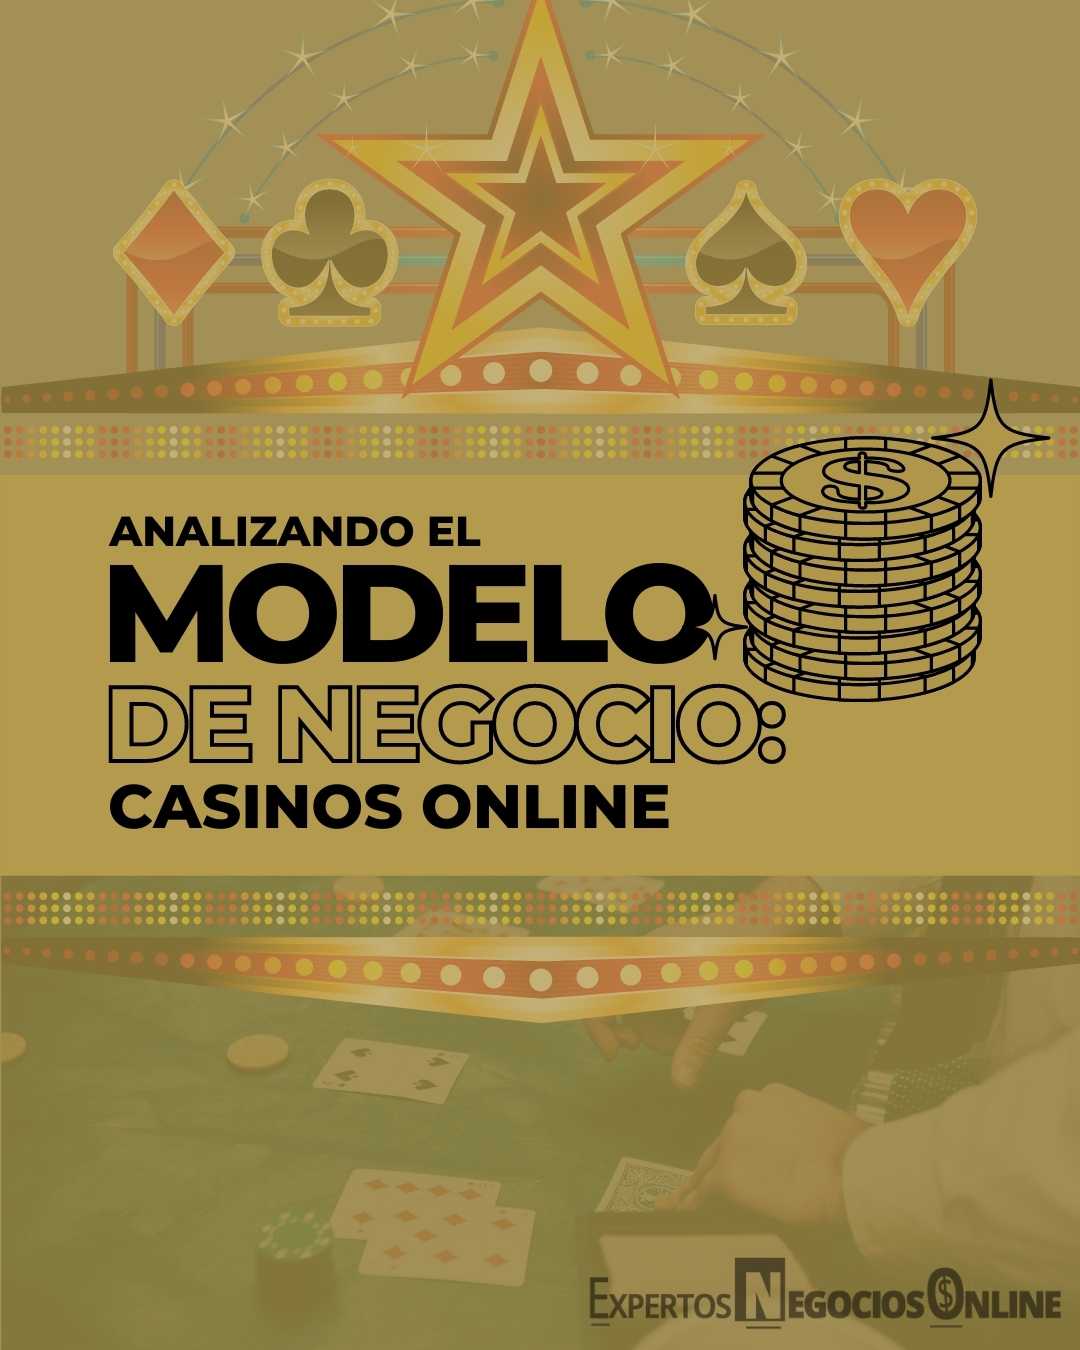 El modelo de negocio de los casinos online